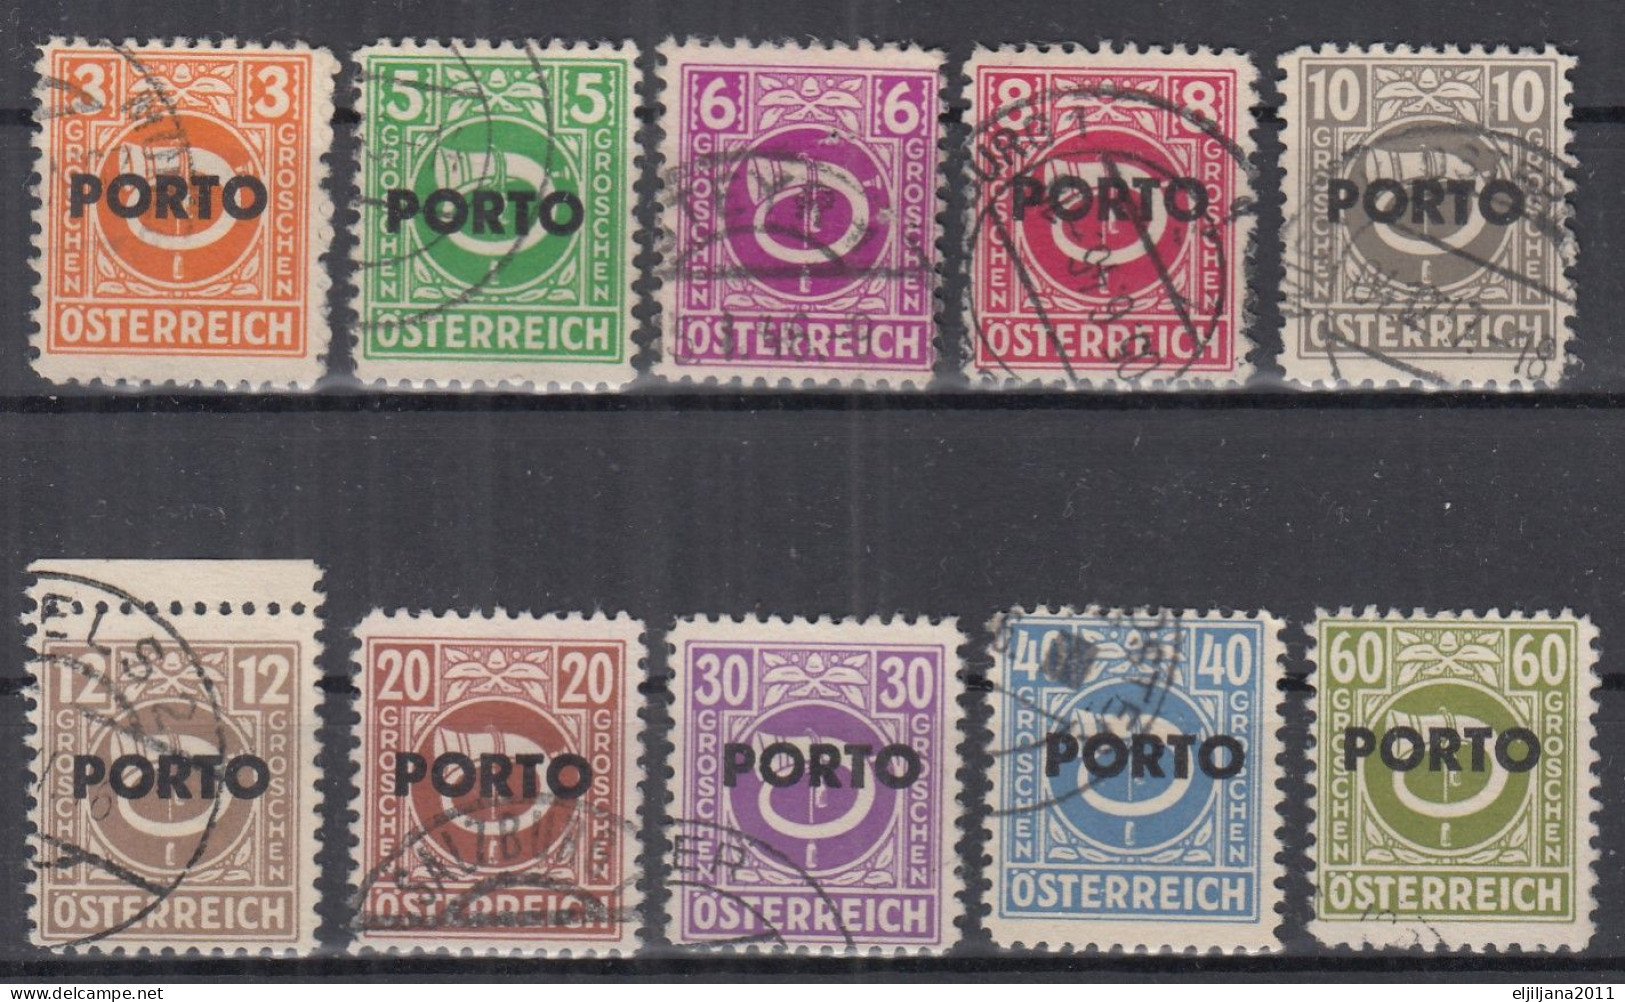 ⁕  Austria - Österreich 1946 ⁕ Postage Due - Overprint PORTO ⁕ 10v Used - Impuestos